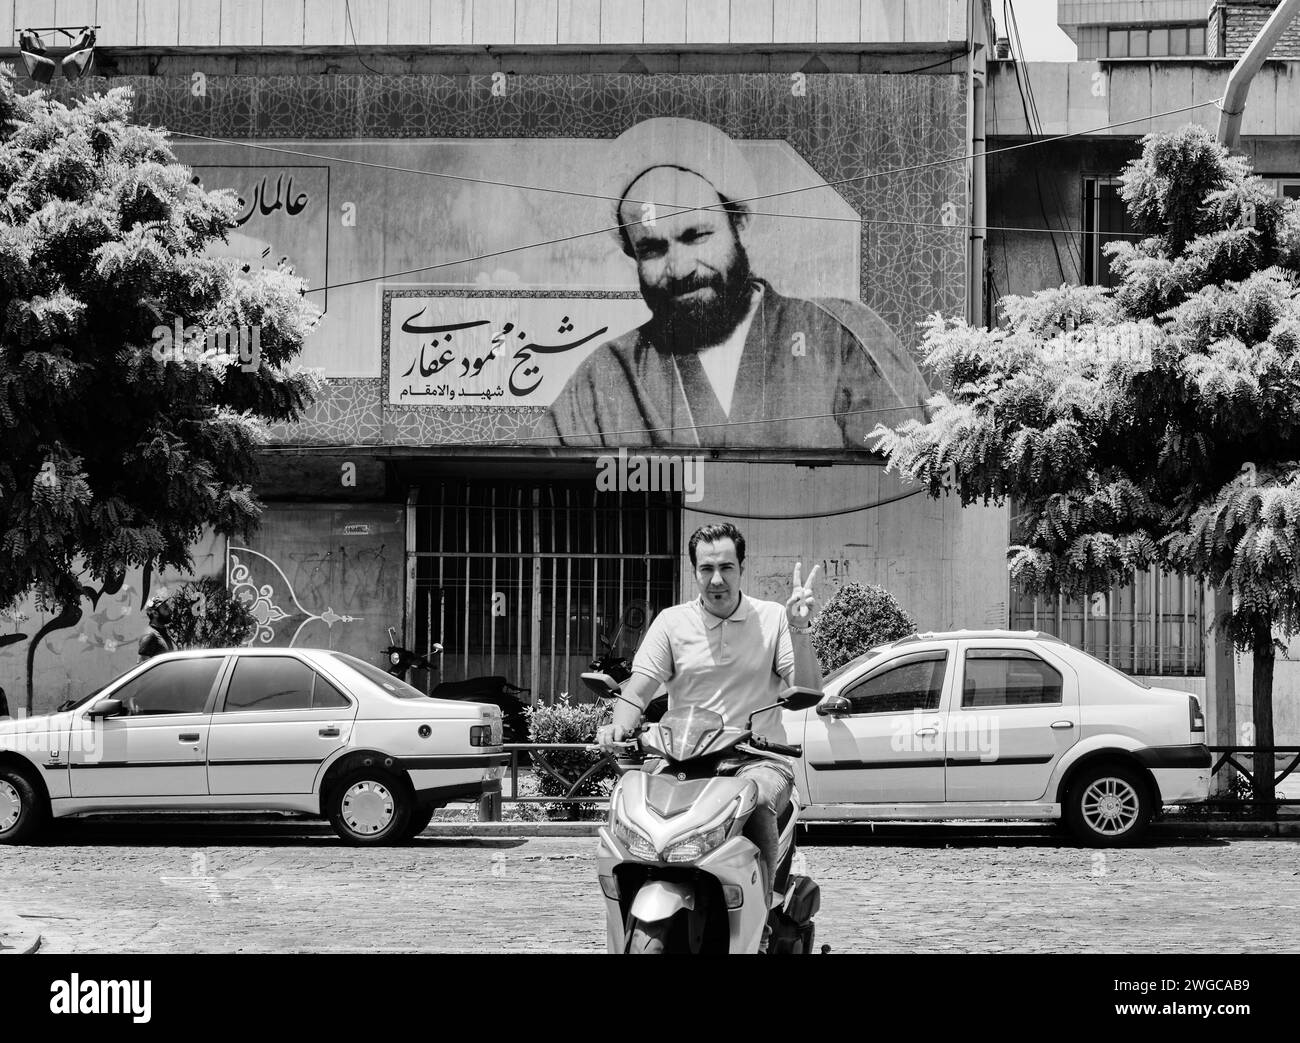 Teheran (Teheran), Iran, 06.24.2023: Ein iranischer Mann macht Siegeszeichen unter dem Plakat des Imams. Schwarzweißfoto des Iran. Stockfoto